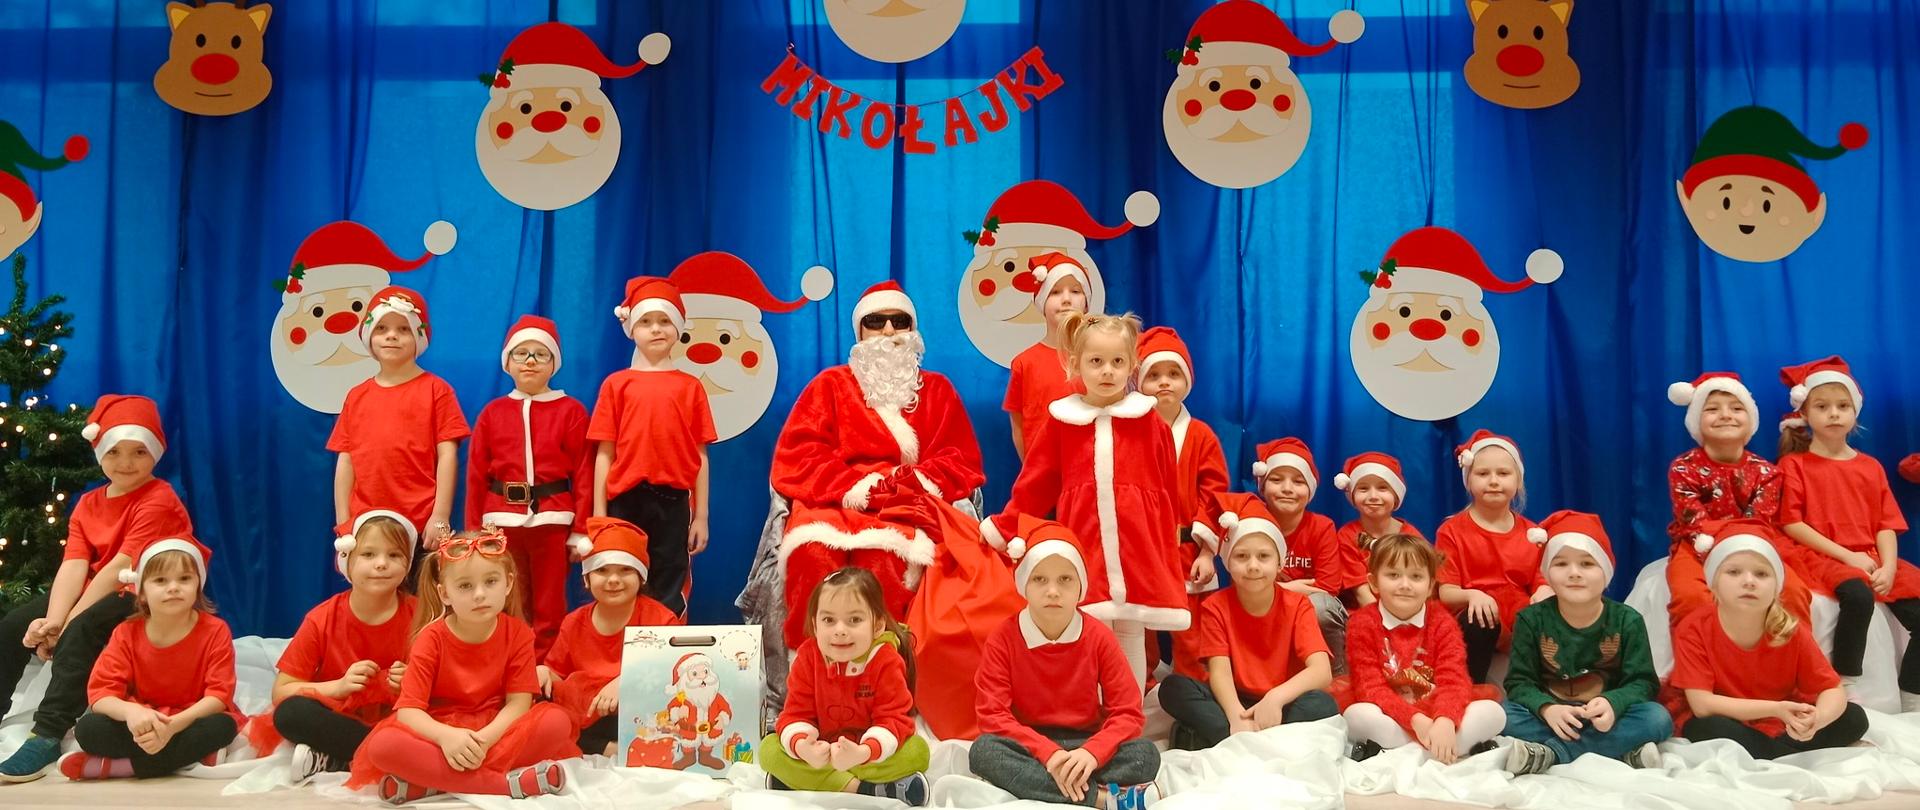 Dzieci ubrane w czerwone stroje i w czapkach mikołajkowych z Mikołajem na tle dekoracji z napisem Mikołajki